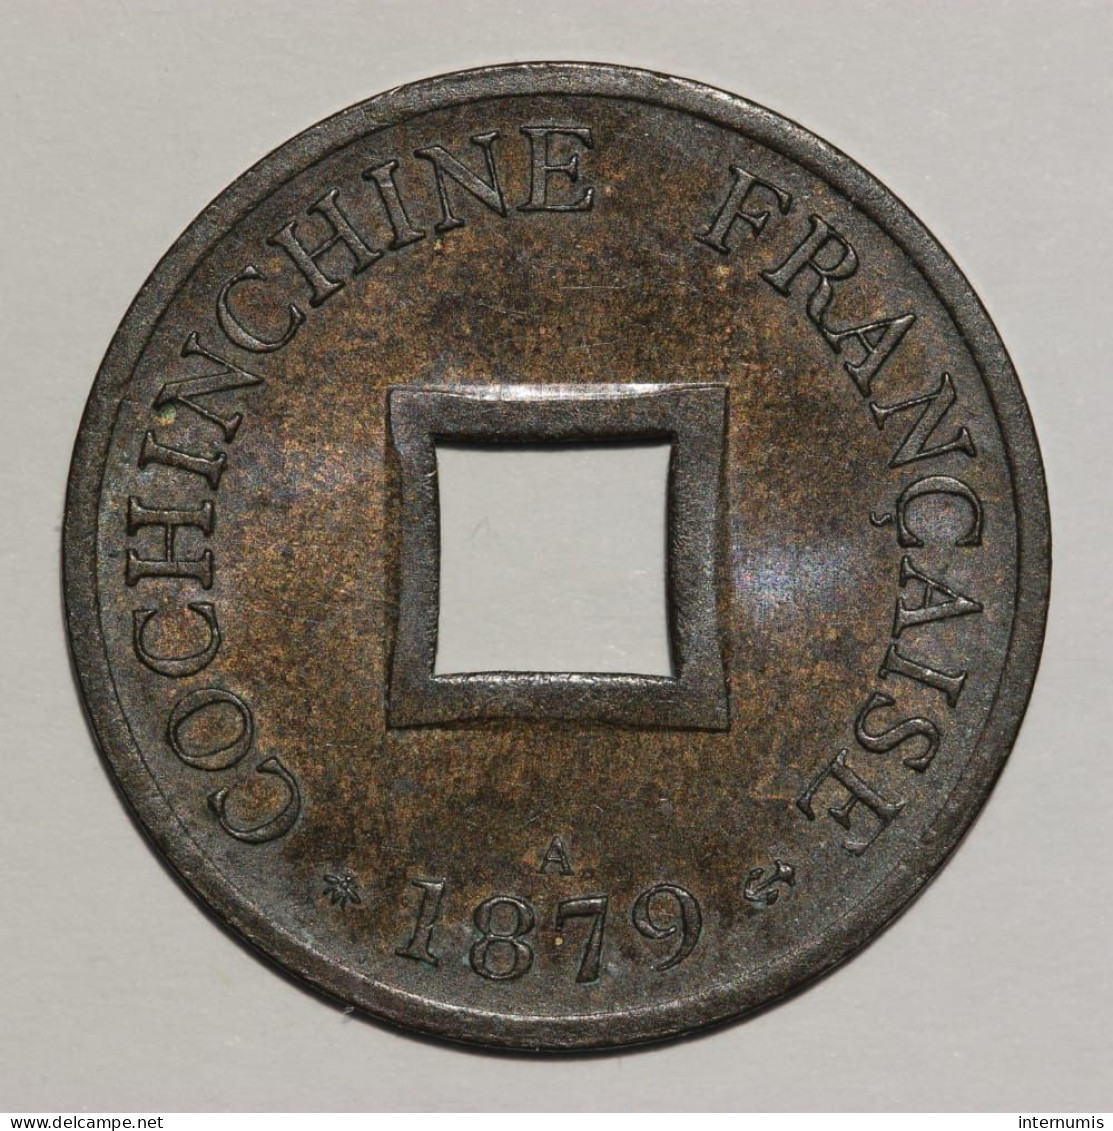 Cochinchine / French Cochinchina, Sapeque, 1879, A - Paris, Bronze, NC (UNC), KM#2, Lec.9 - Cochinchina